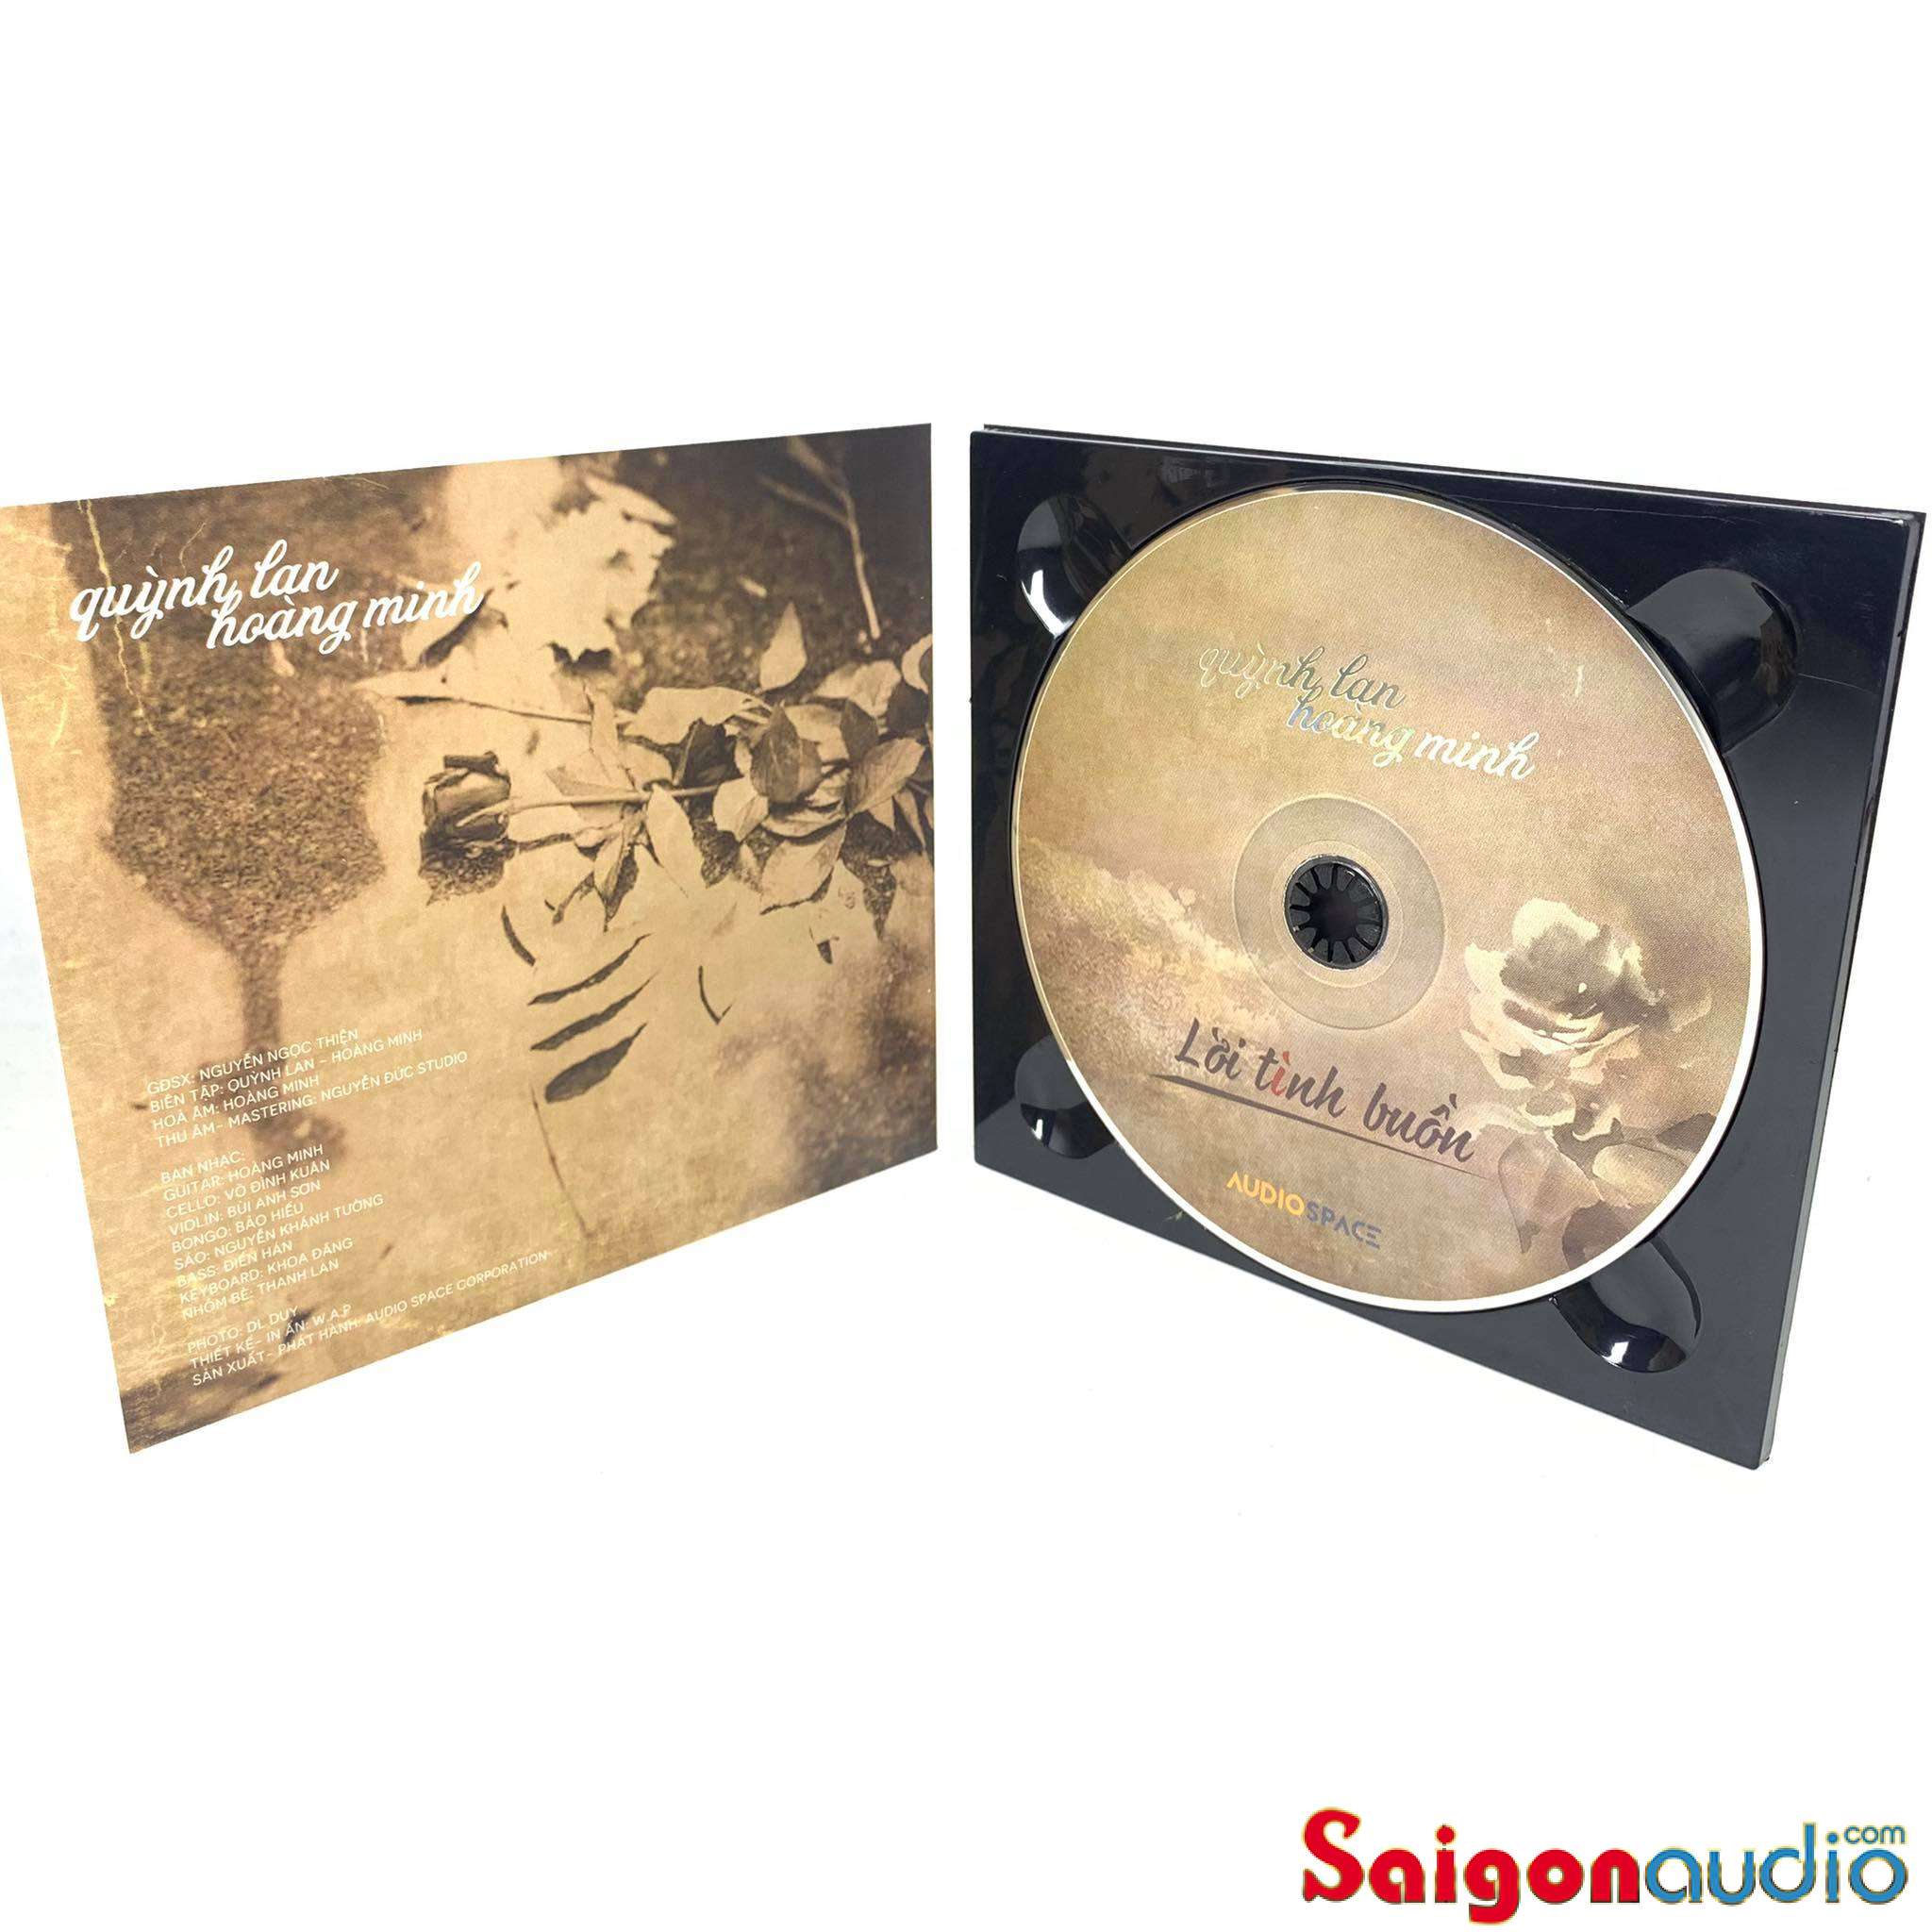 Đĩa CD nhạc gốc Lời Tình Buồn - Quỳnh Lan - Hoàng Minh Guitar (Free ship khi mua 2 đĩa CD cùng hoặc khác loại)